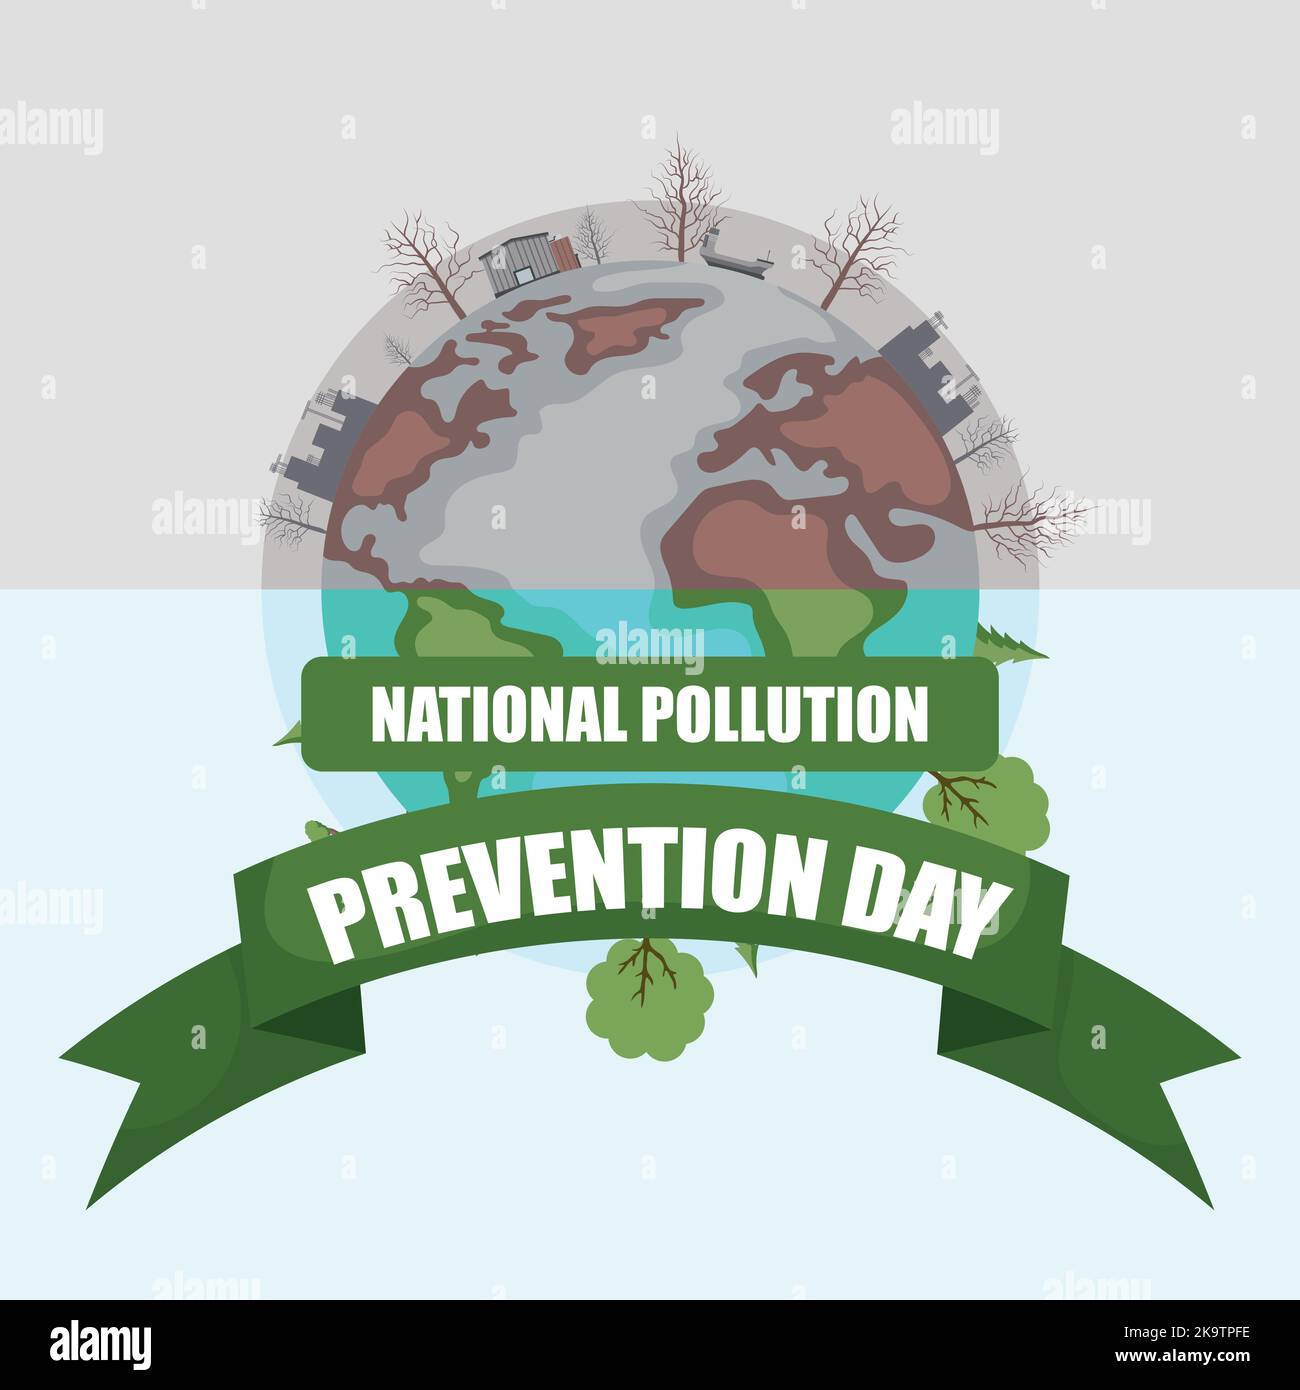 Nationaler Tag zur Vermeidung von Umweltverschmutzung mit verschmutztem Planeten Erde Stock Vektor